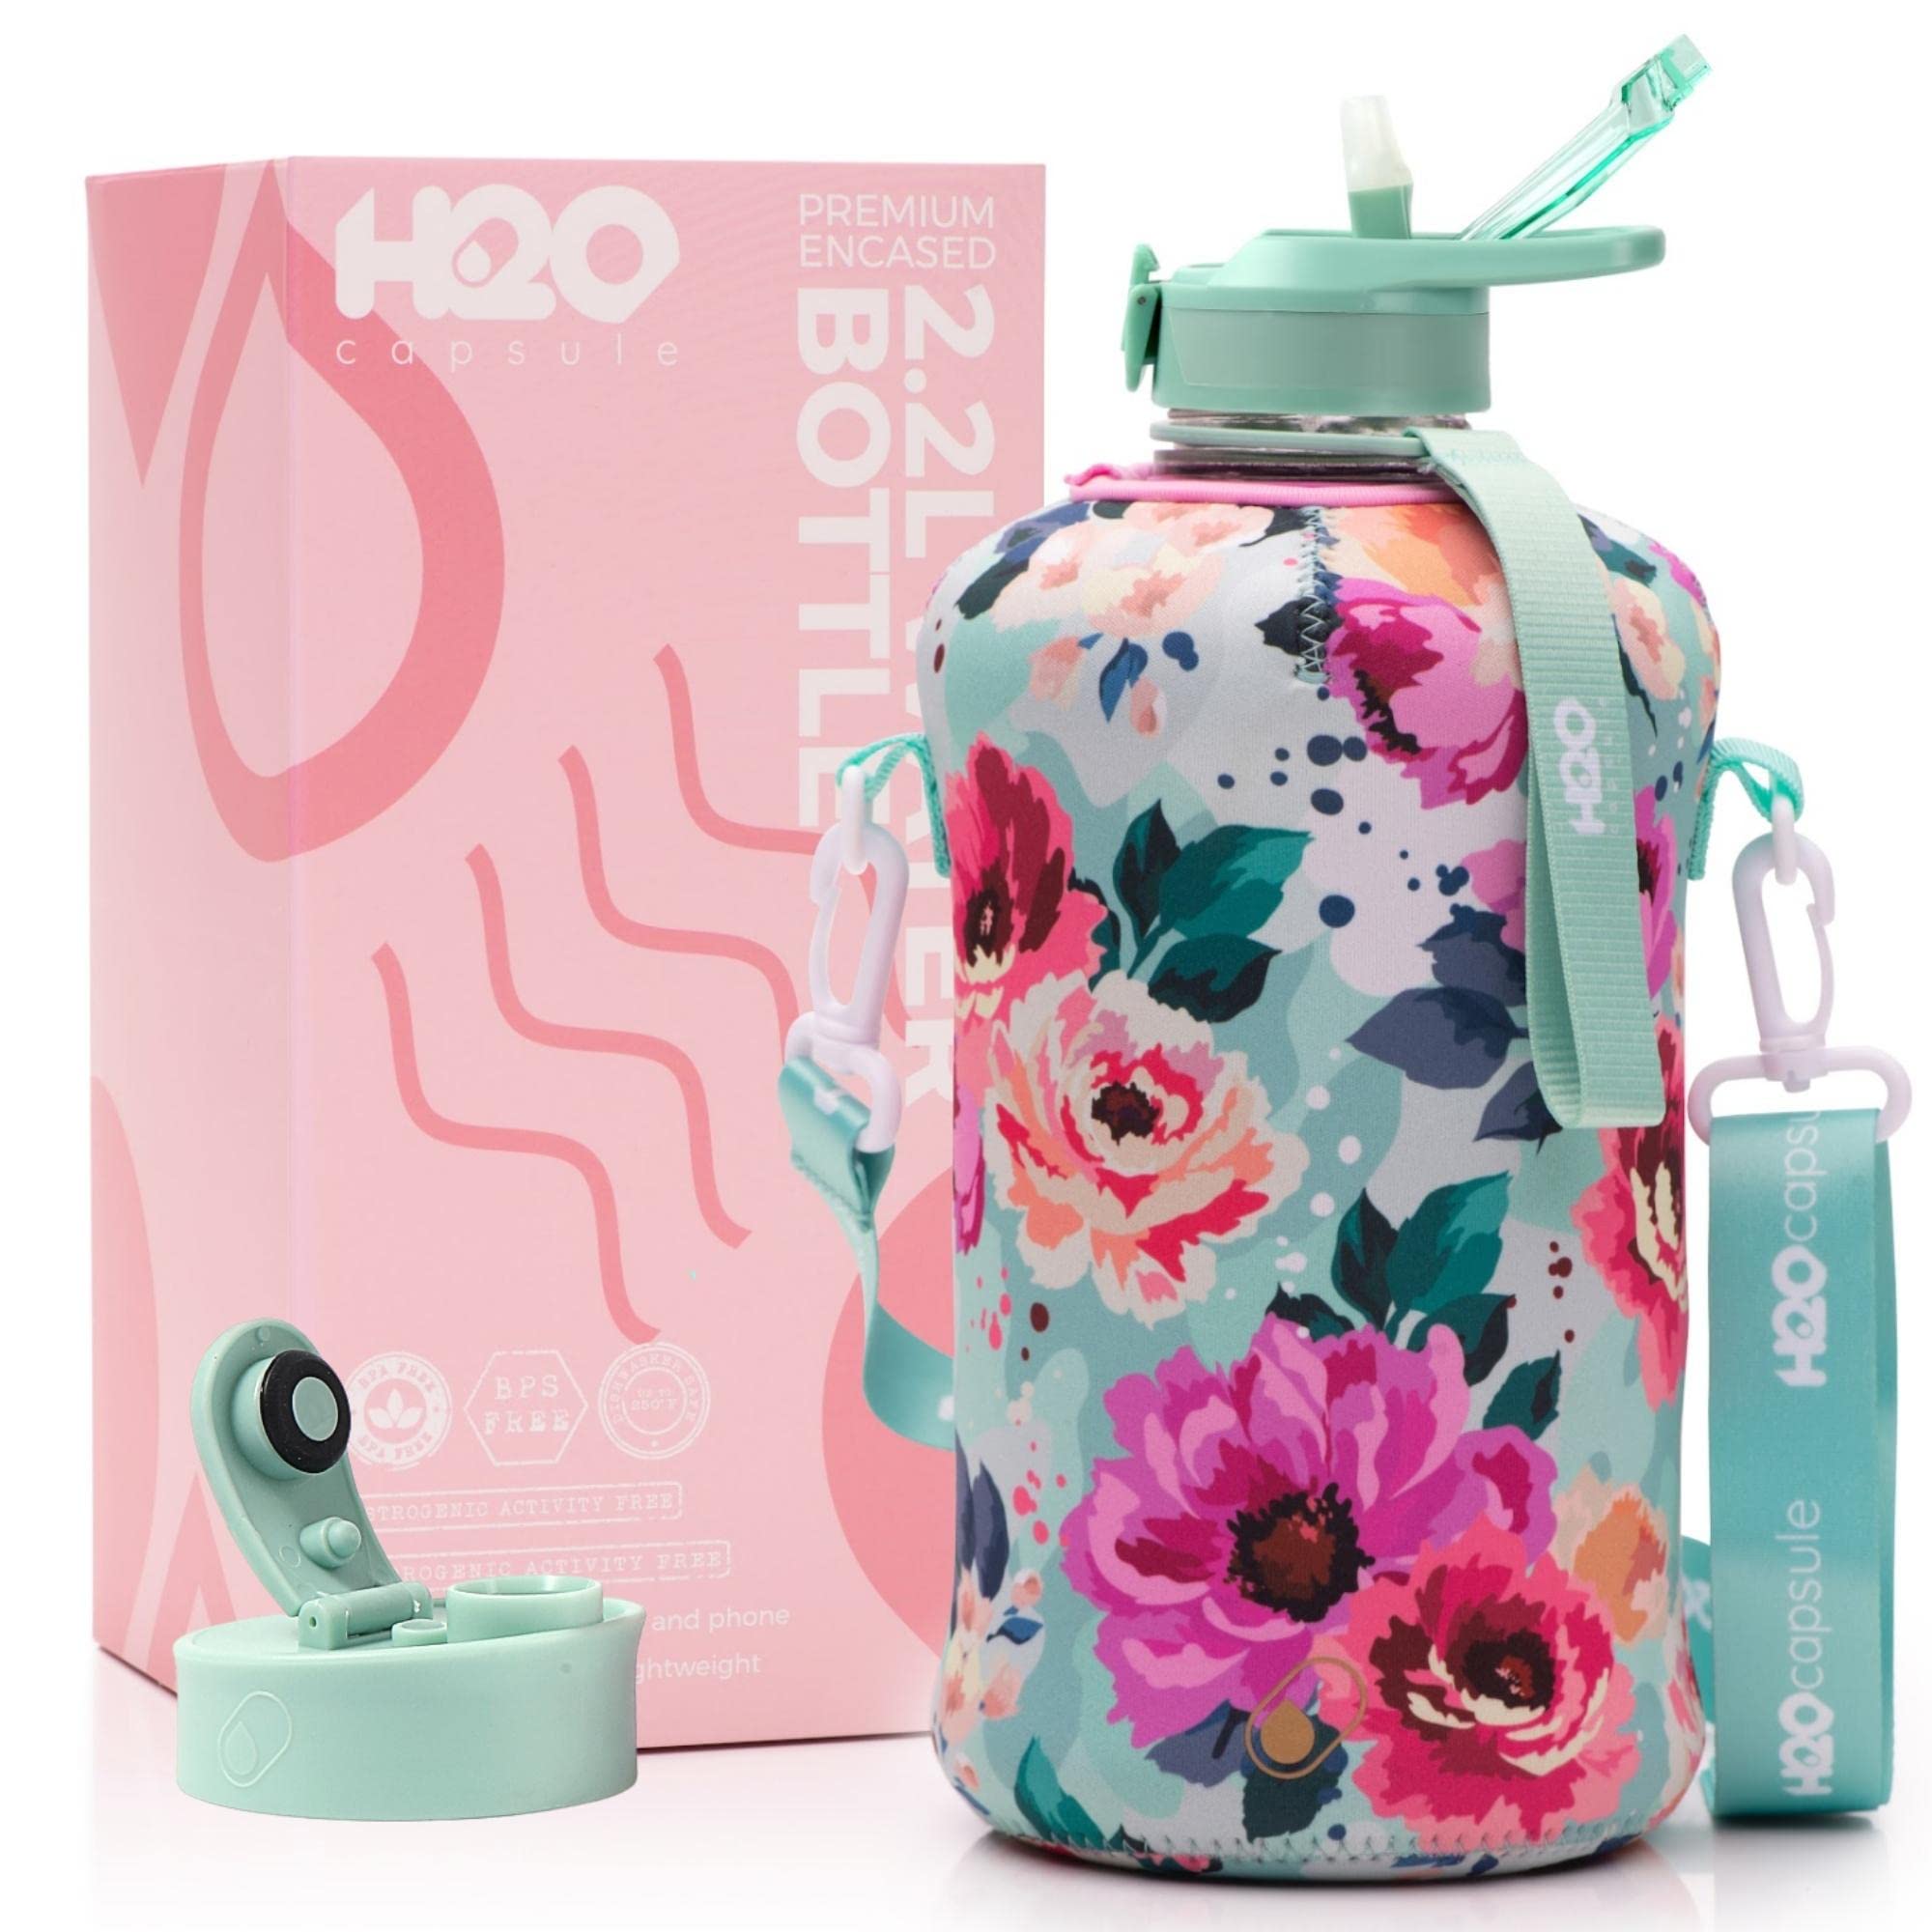 H2O Capsule 2.2 l Wasserflasche mit Aufbewahrungstasche und abgedecktem Strohhalm-Deckel – BPA-freier, wiederverwendbarer Getränkebehälter mit Griff – großer Sportkrug, 2.2 l (7.5 oz) Floral Bloom